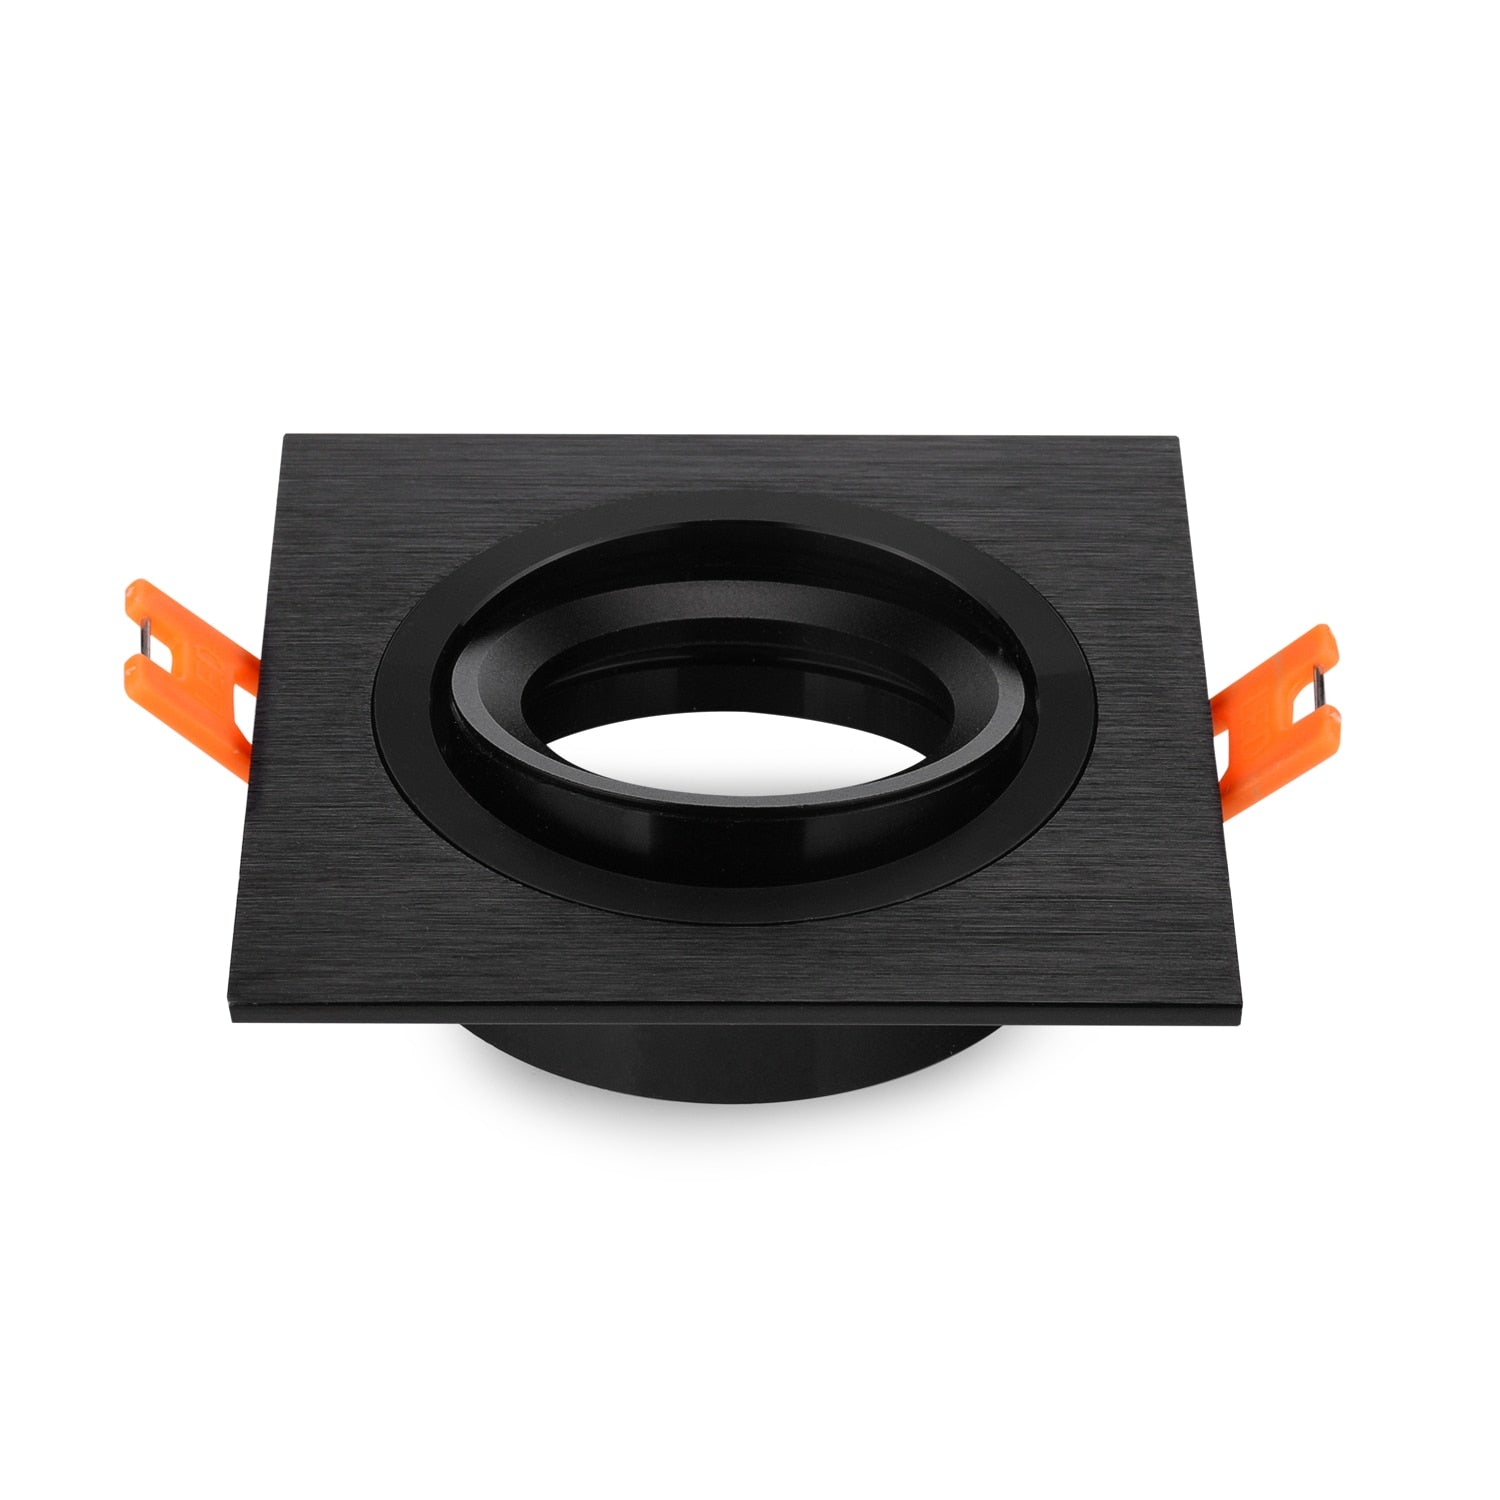 NEW 5pcs/lot Black Recessed Square Downlight Holder Adjustable Frame for LED GU10 MR16